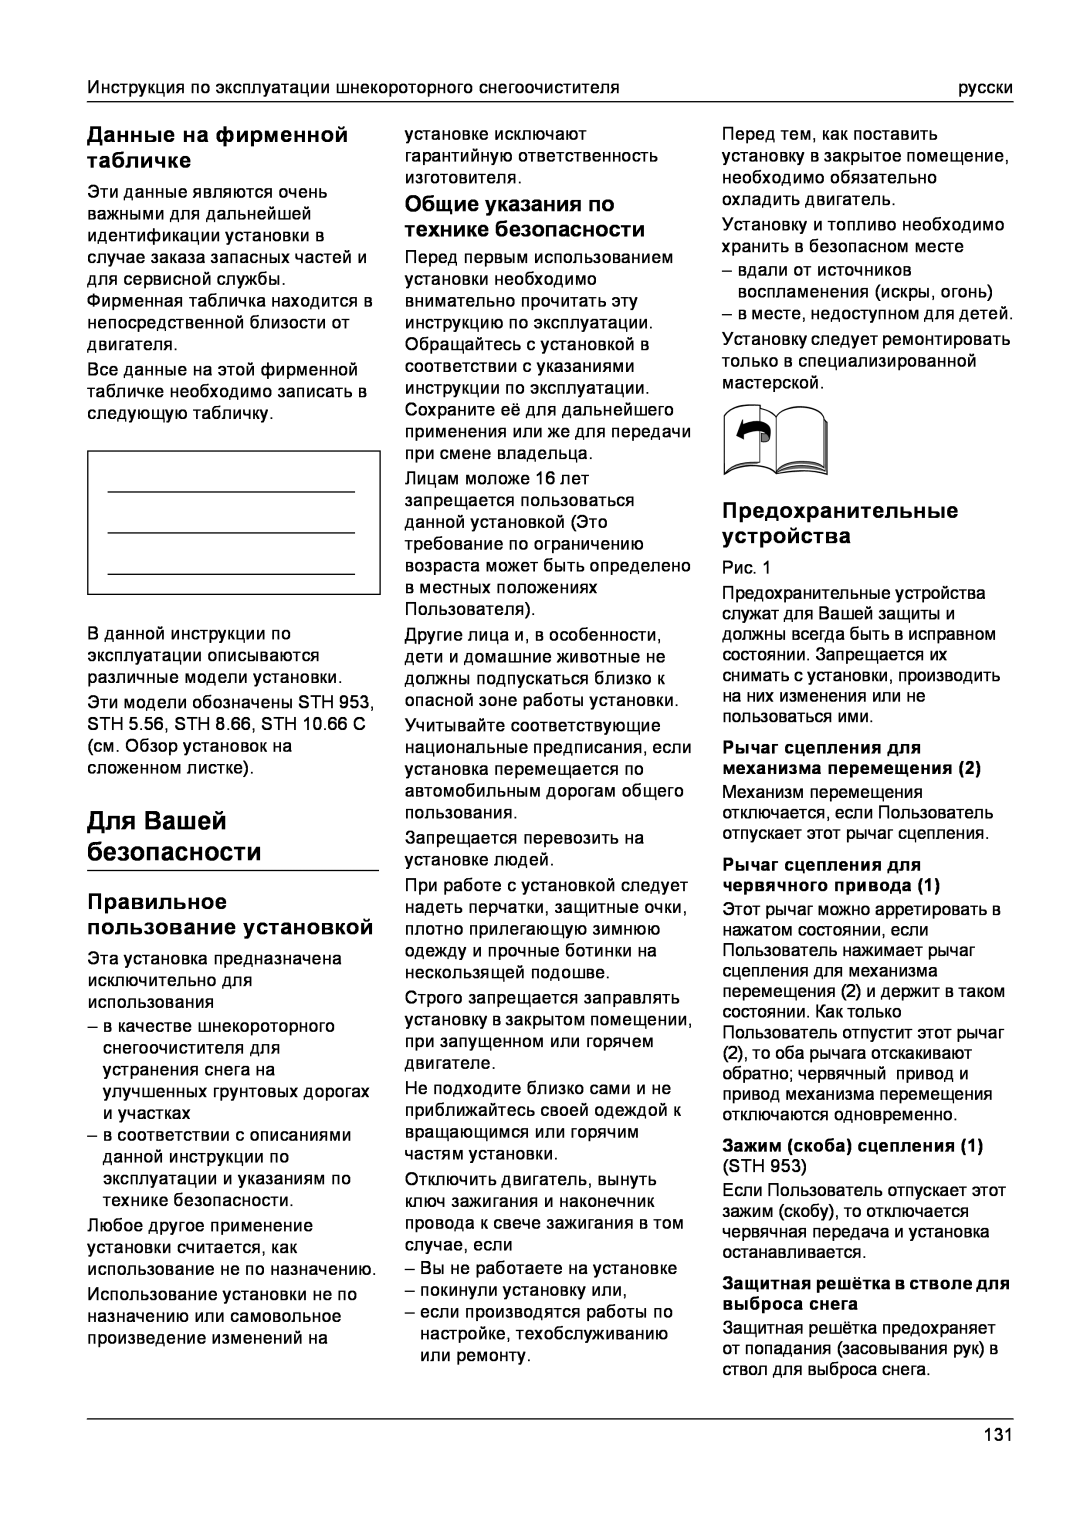 Karcher STH 10.66 C, STH 8.66 manual Для Вашей безопасности, Данные на фирменной табличке, Правильное пользование установкой 